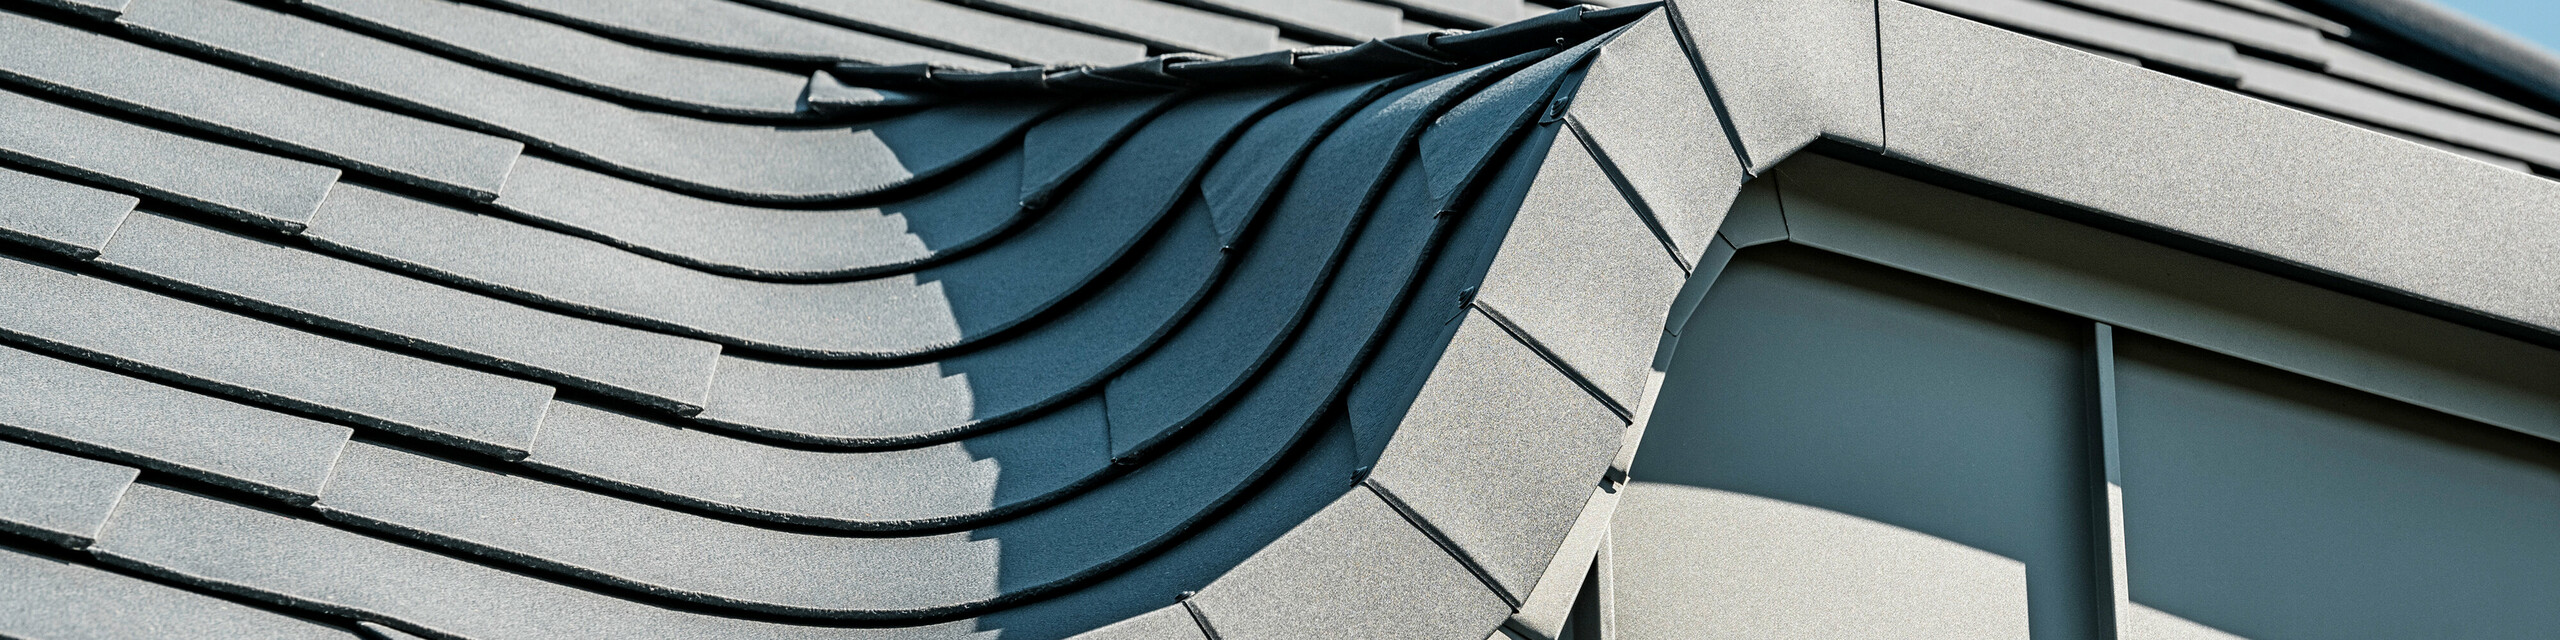 Nahaufnahme einer geschwungenen Hechtgaube, gedeckt mit PREFA Dachschindeln in P.10 Anthrazit, die sich durch ihre Flexibilität bei der Dachgestaltung auszeichnen. Die Detailansicht zeigt die präzise Verlegung und die hohe Anpassungsfähigkeit der Aluminiumschindeln an komplexe Dachformen, was die handwerkliche Qualität und die innovative Technologie von PREFA unterstreicht.